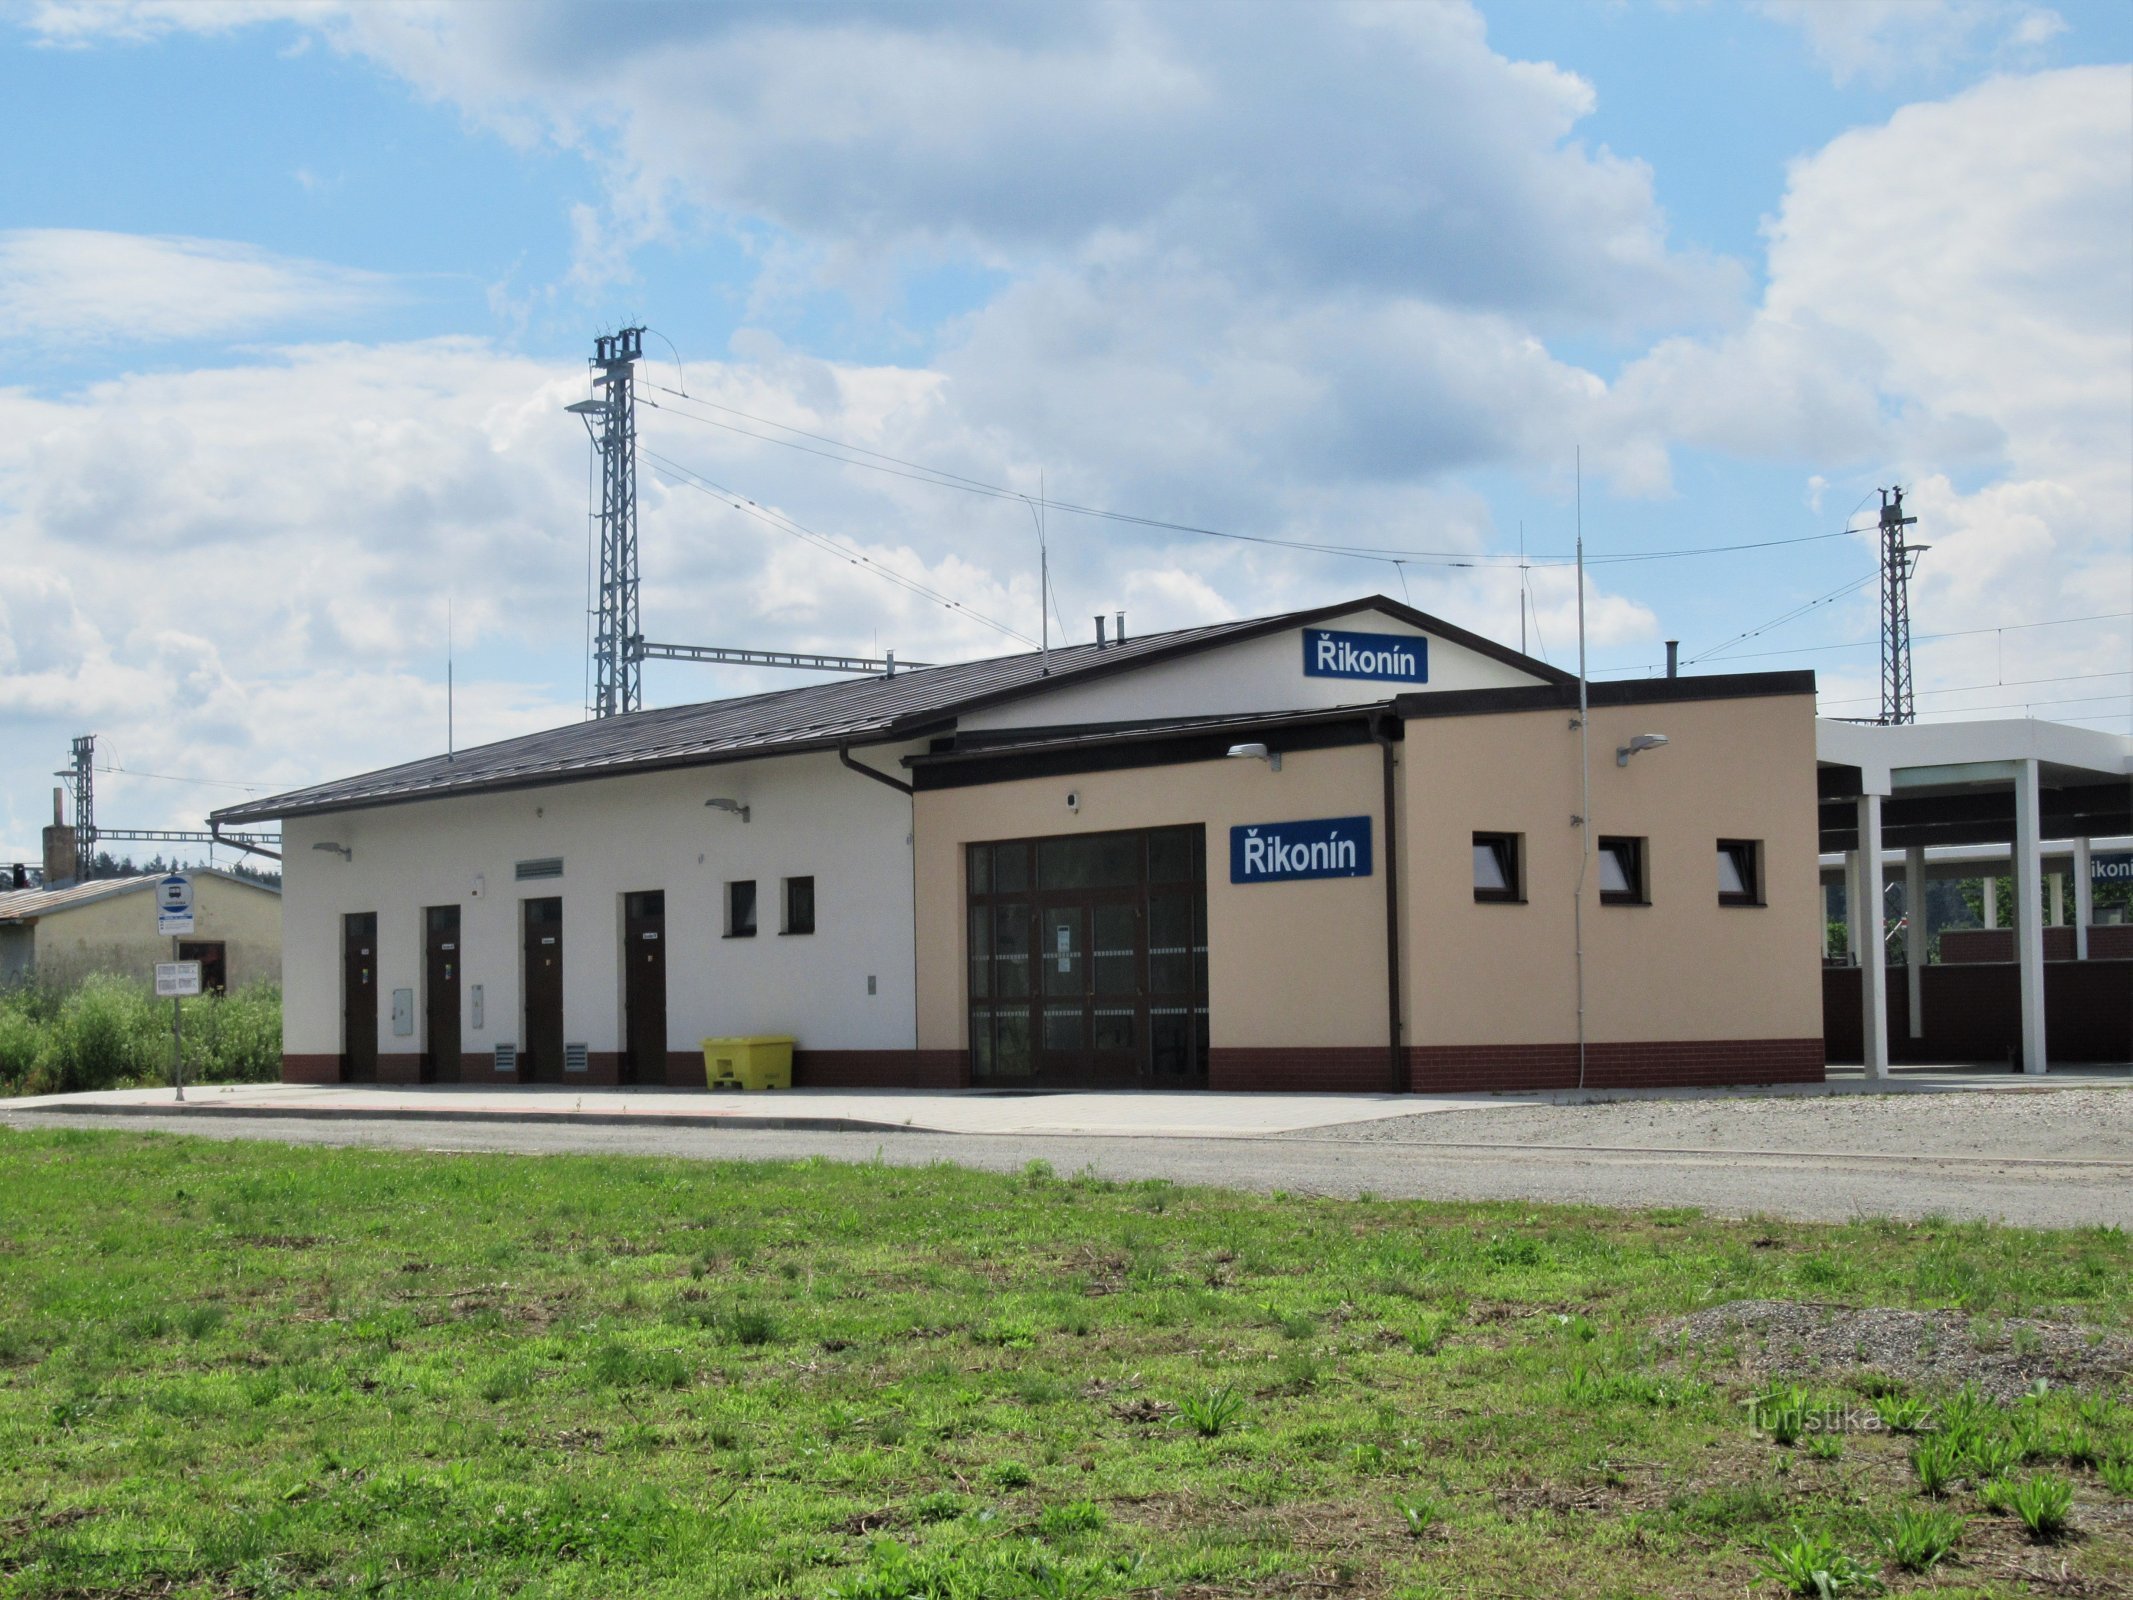 The station building in Řikonín